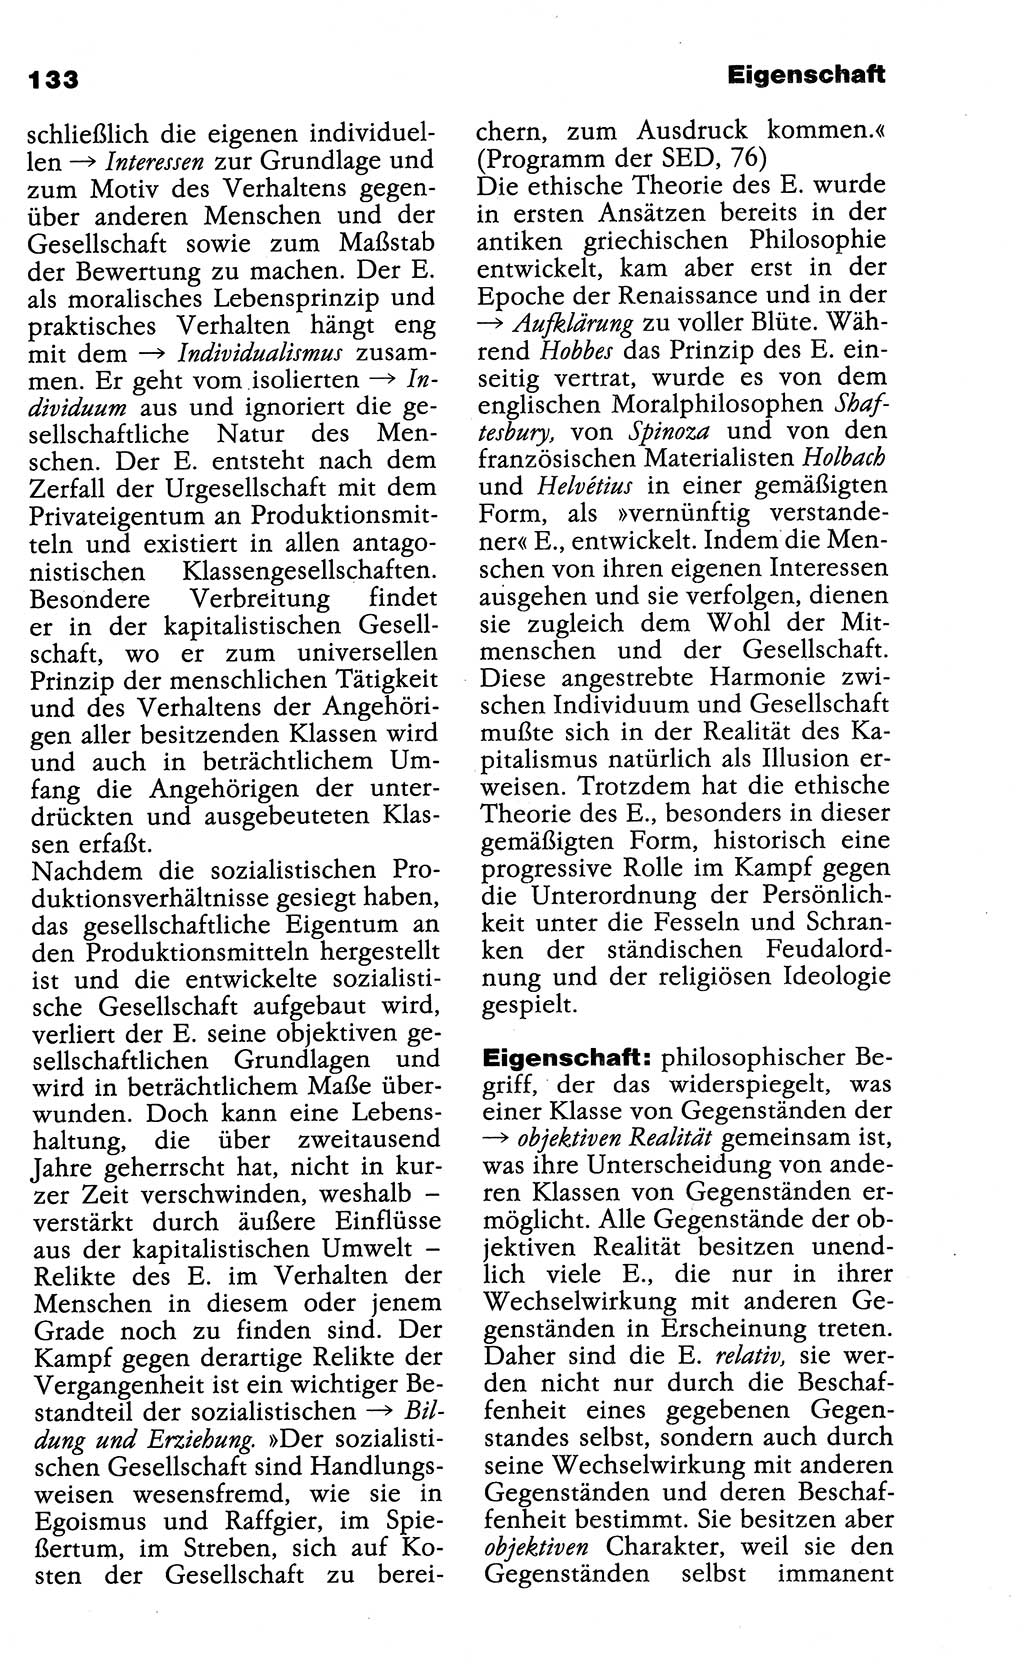 Wörterbuch der marxistisch-leninistischen Philosophie [Deutsche Demokratische Republik (DDR)] 1985, Seite 133 (Wb. ML Phil. DDR 1985, S. 133)